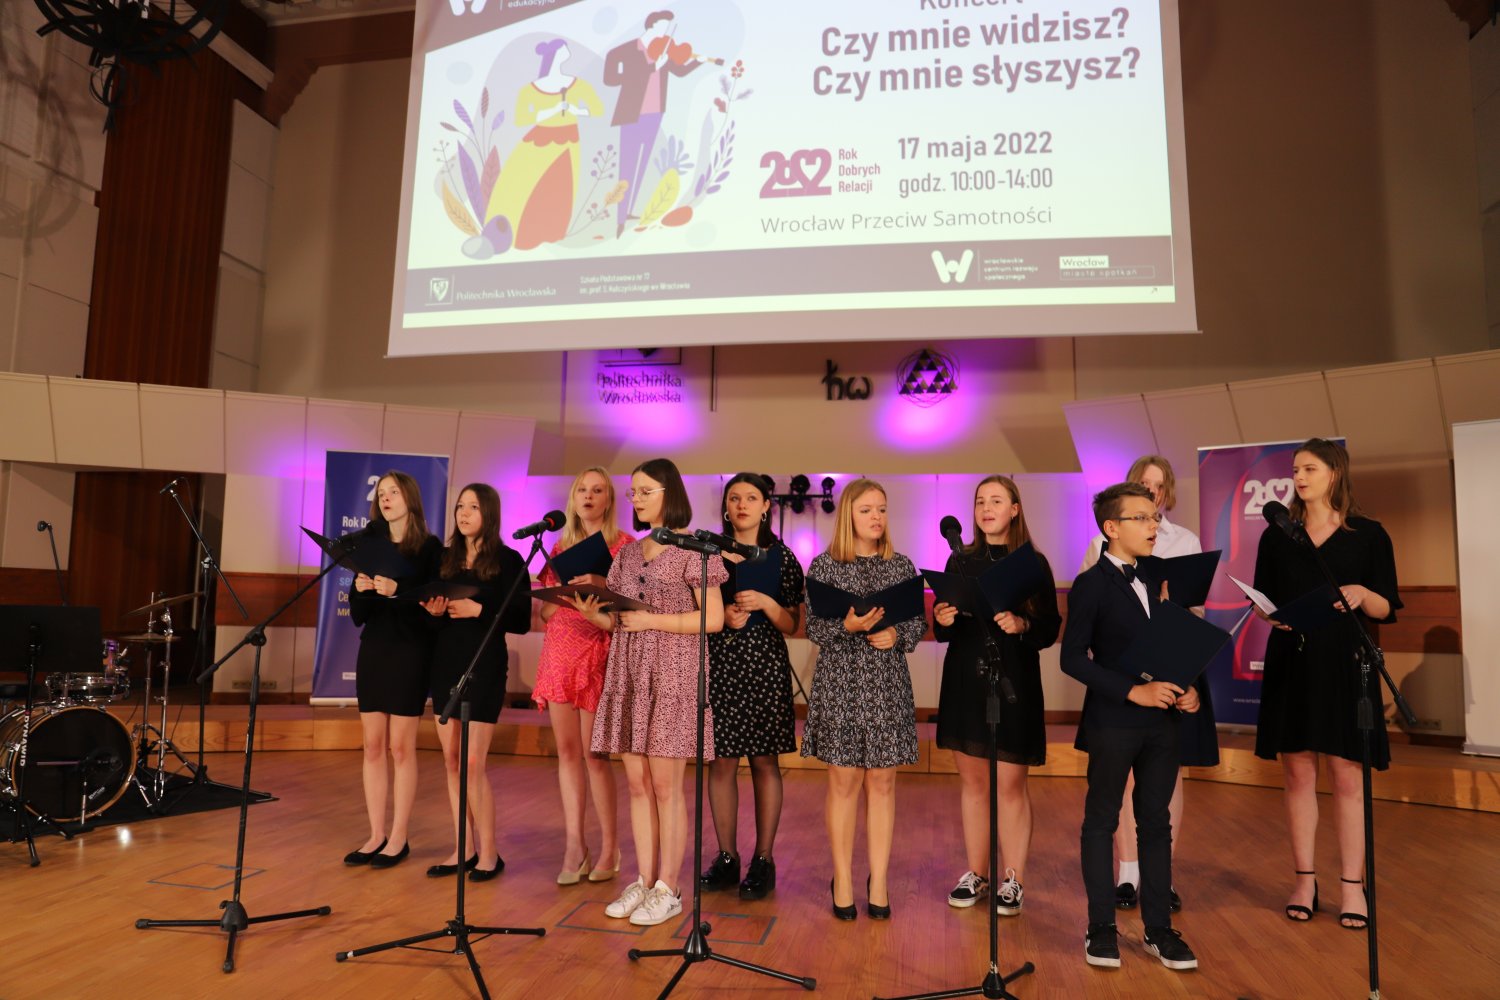 Koncert "Czy mnie widzisz? Czy mnie słyszysz?" w Auli Politechniki Wrocławskiej
17 maja 2022r.